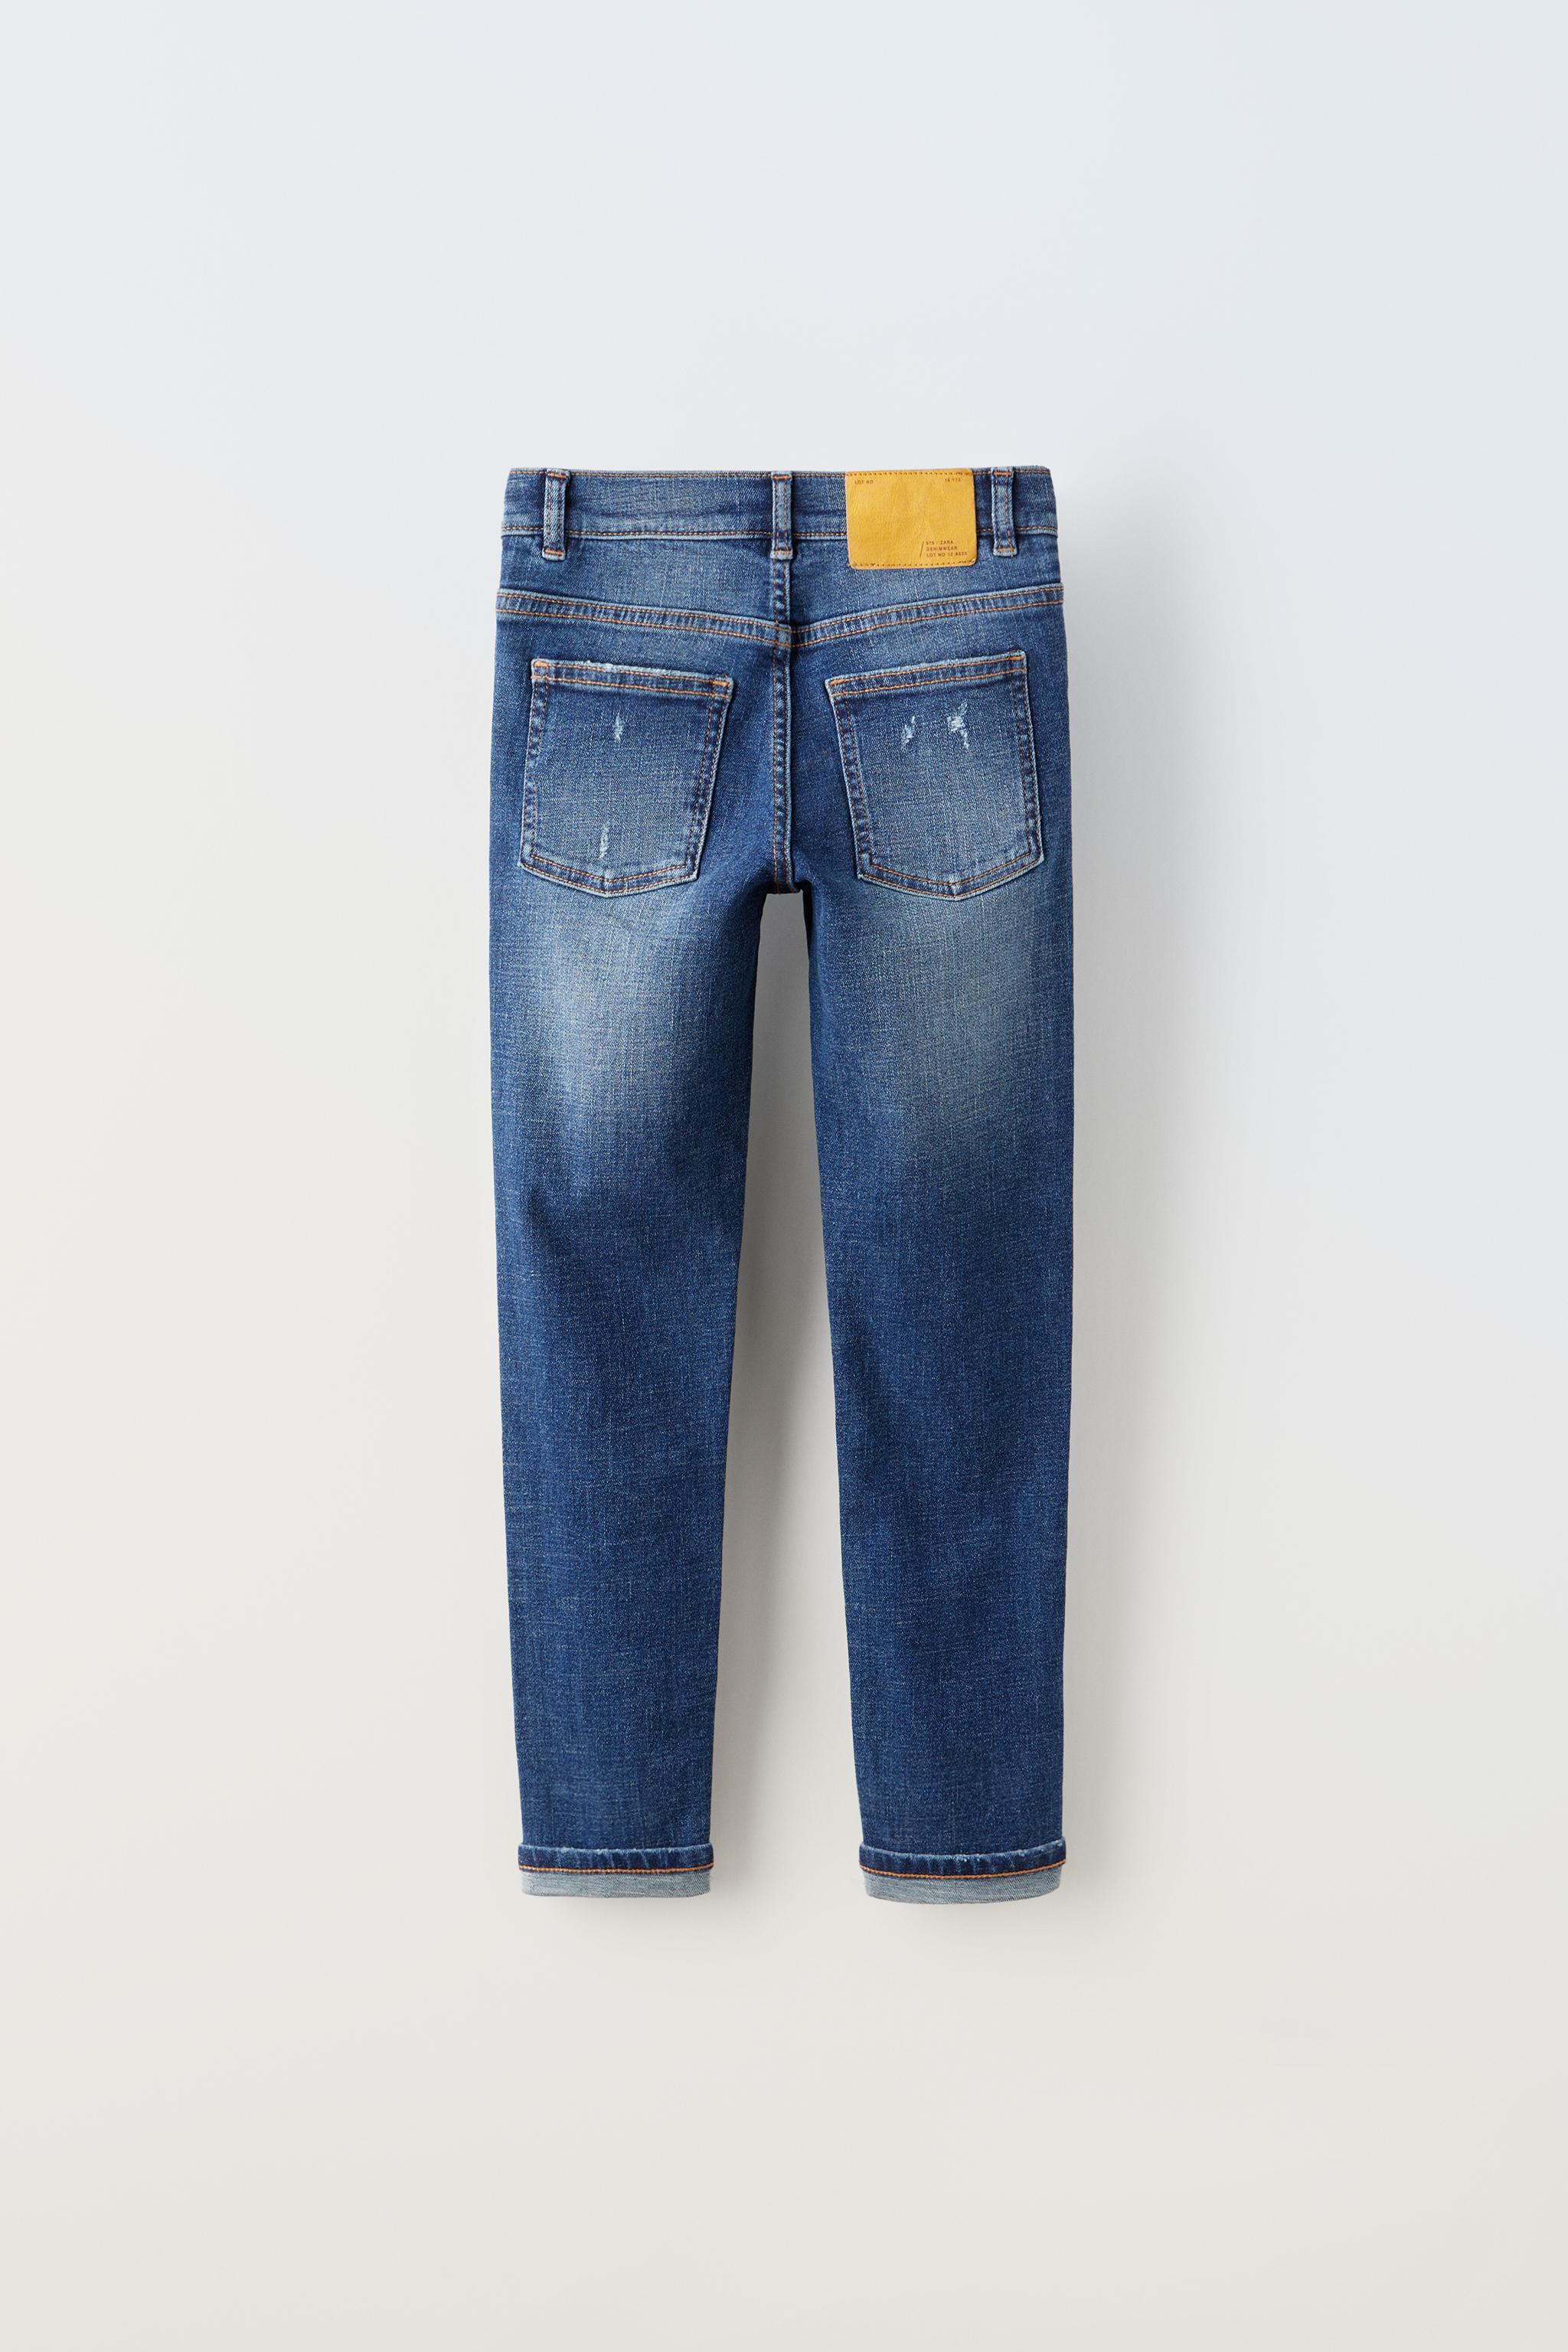 Zara jeans women size 10 blue RN#77302